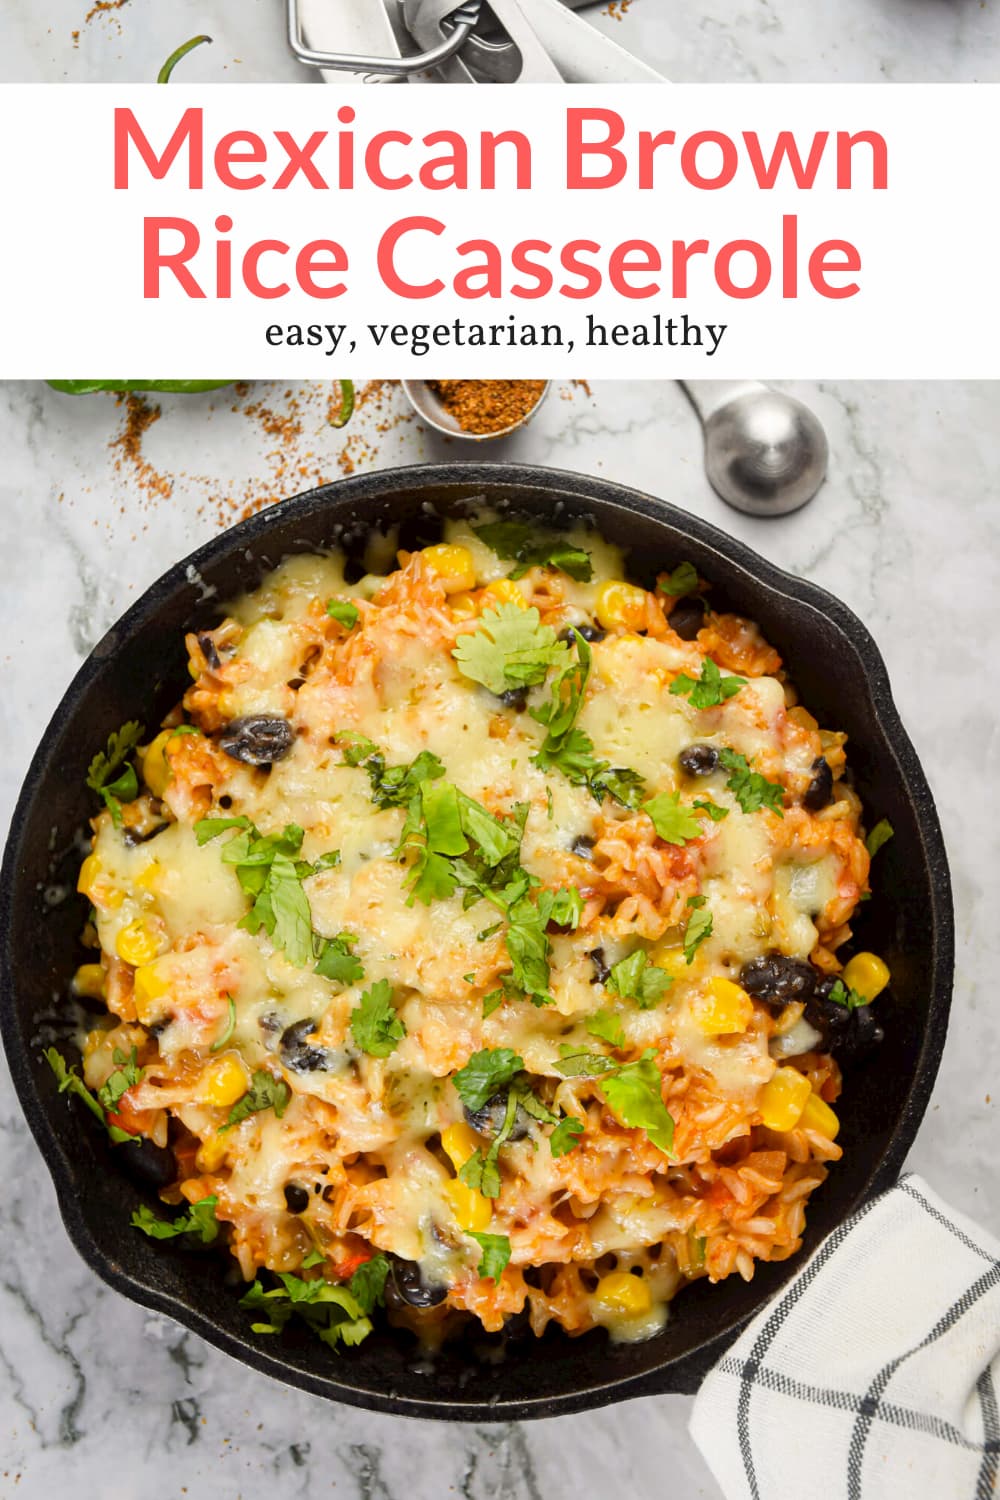 Skillet Mexican Brown Rice Casserole - Slender Kitchen